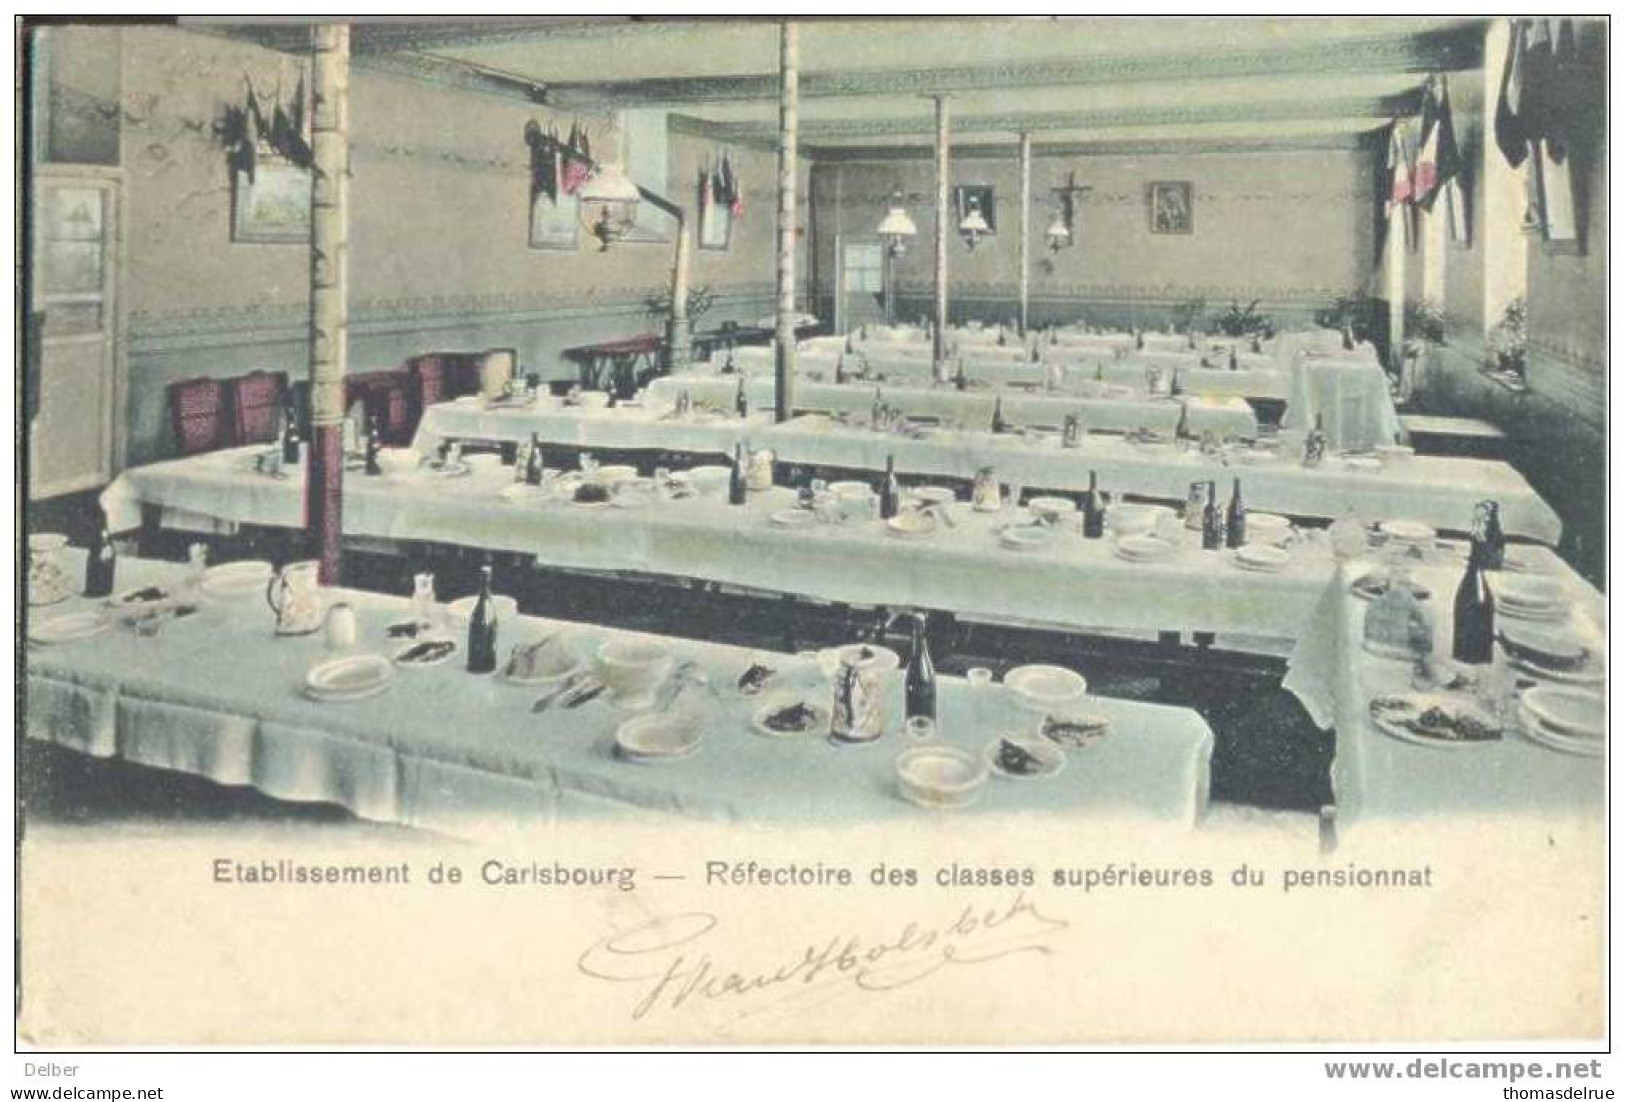 Zz077: Etabissement De Carlsbourg- Réfectoire Des Classes Supérieure 81: E11: CARLSBOURG 29 SEPT 1910: - Paliseul